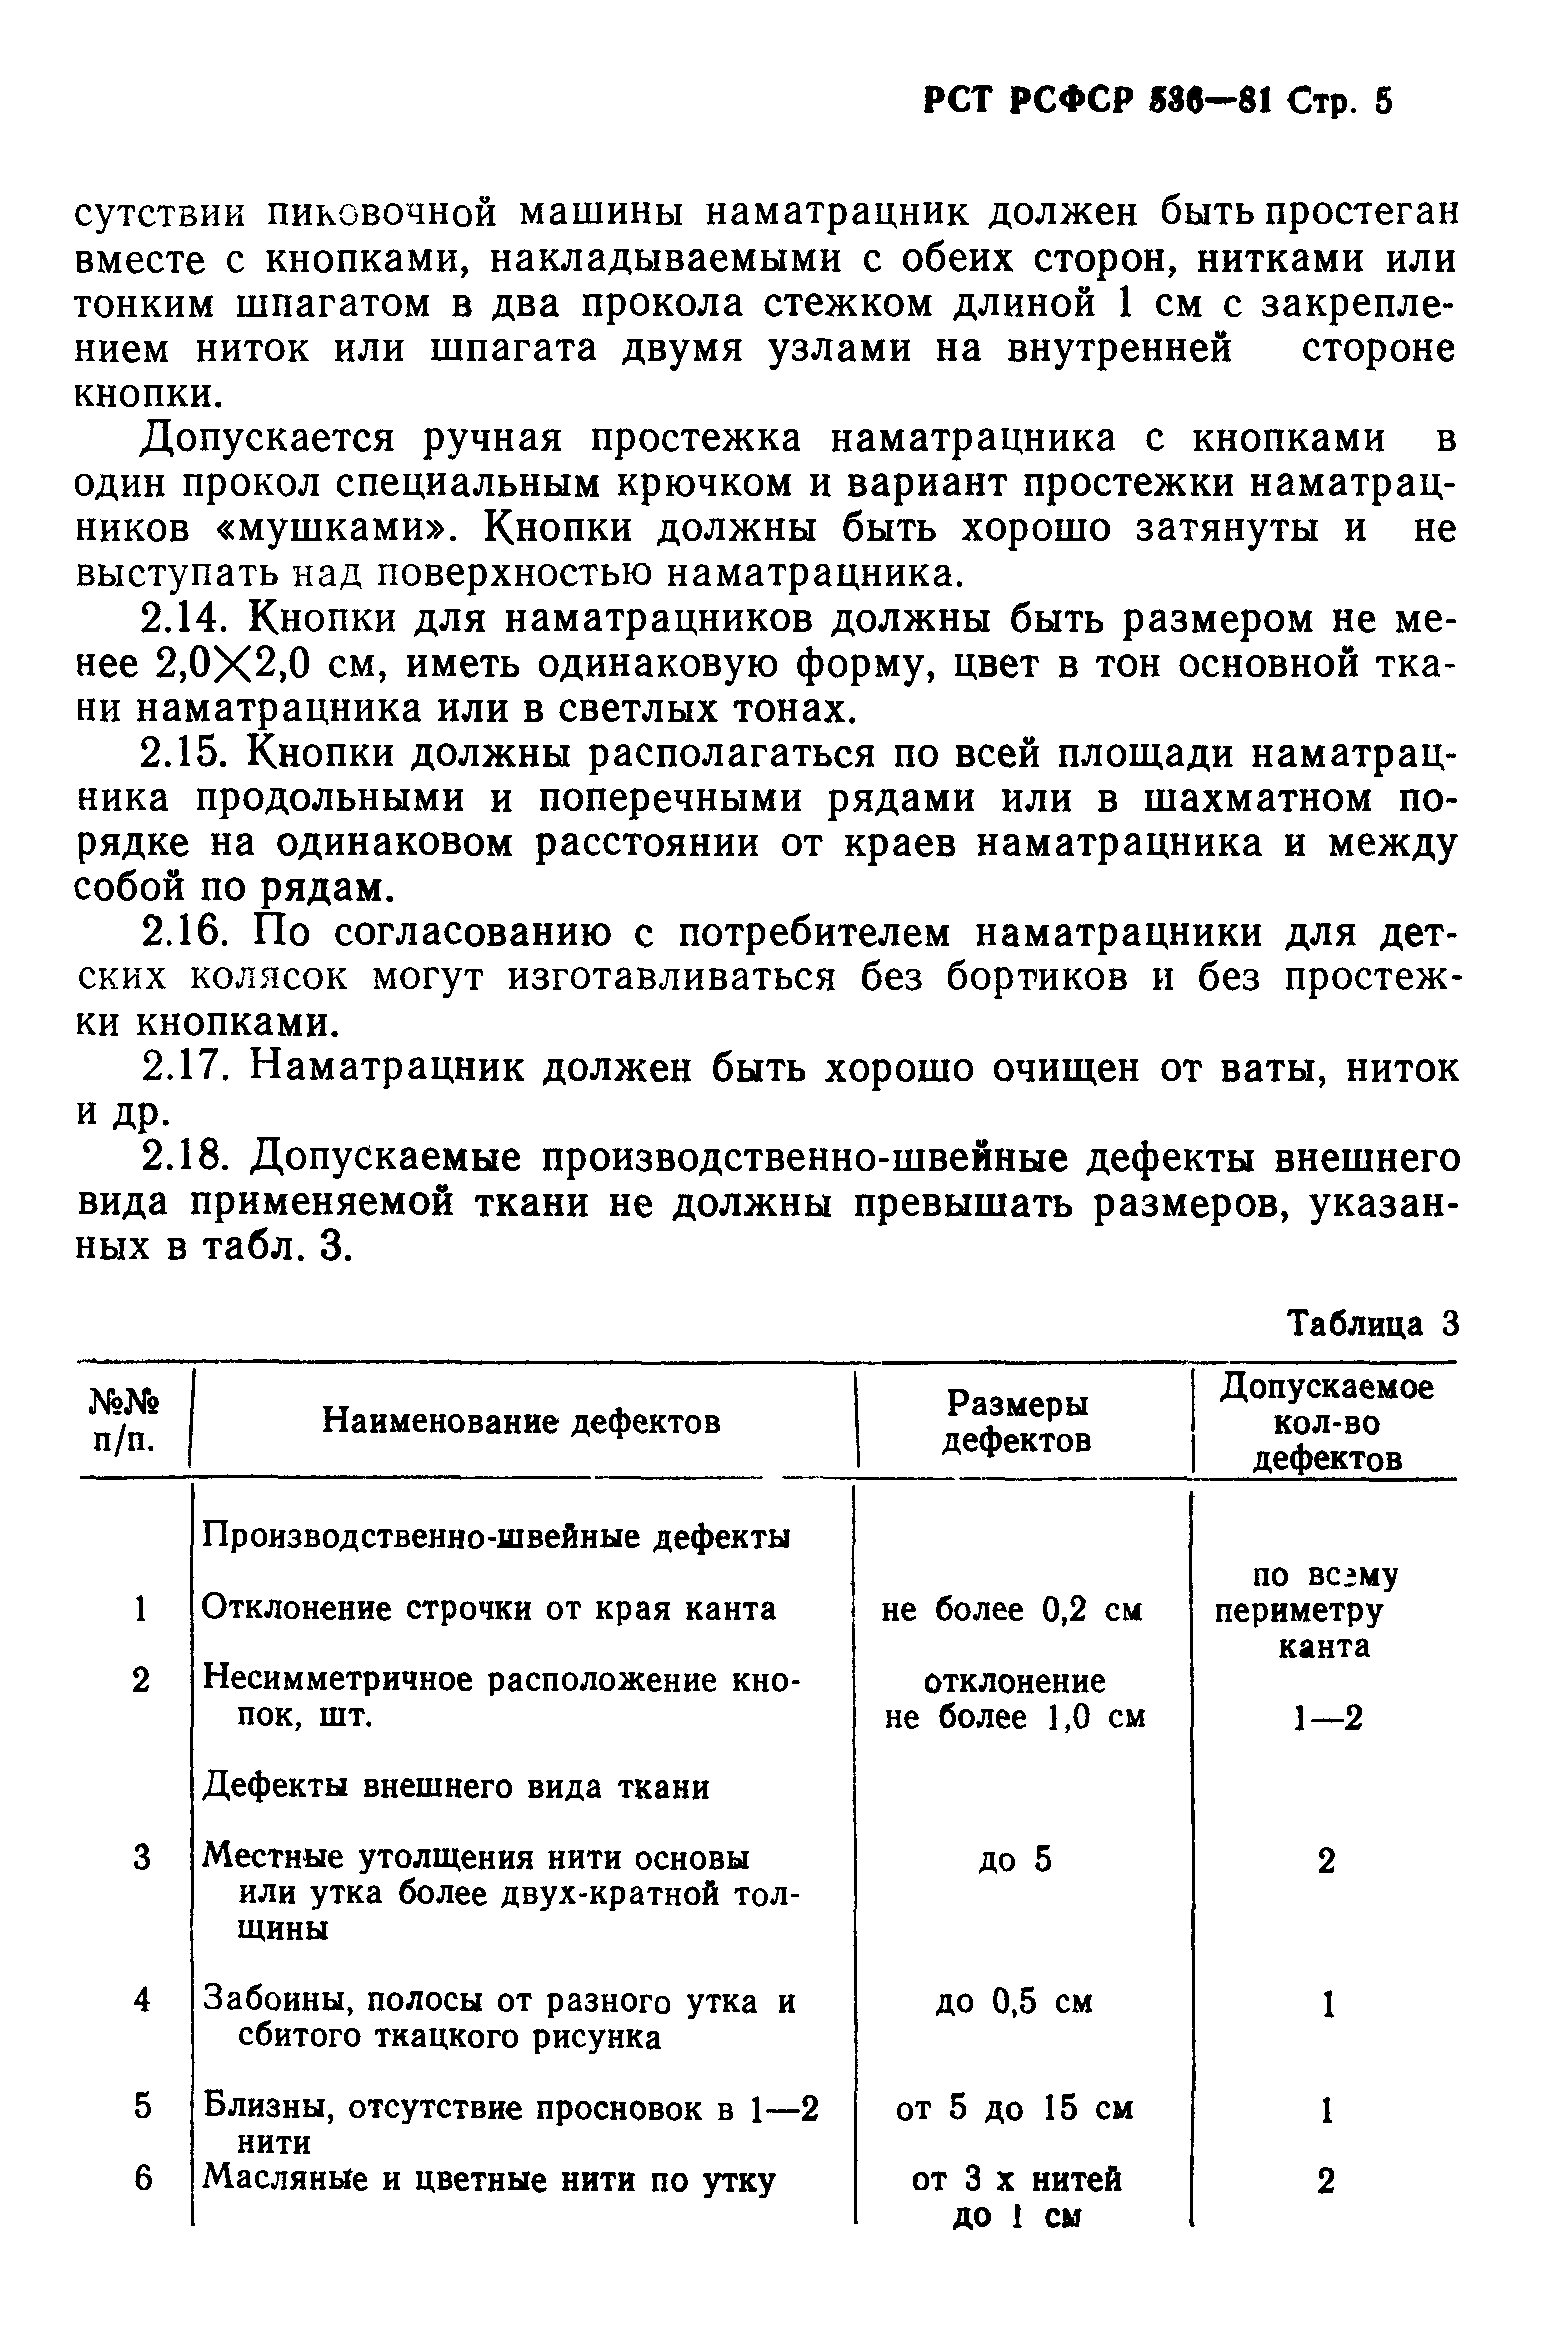 РСТ РСФСР 536-81